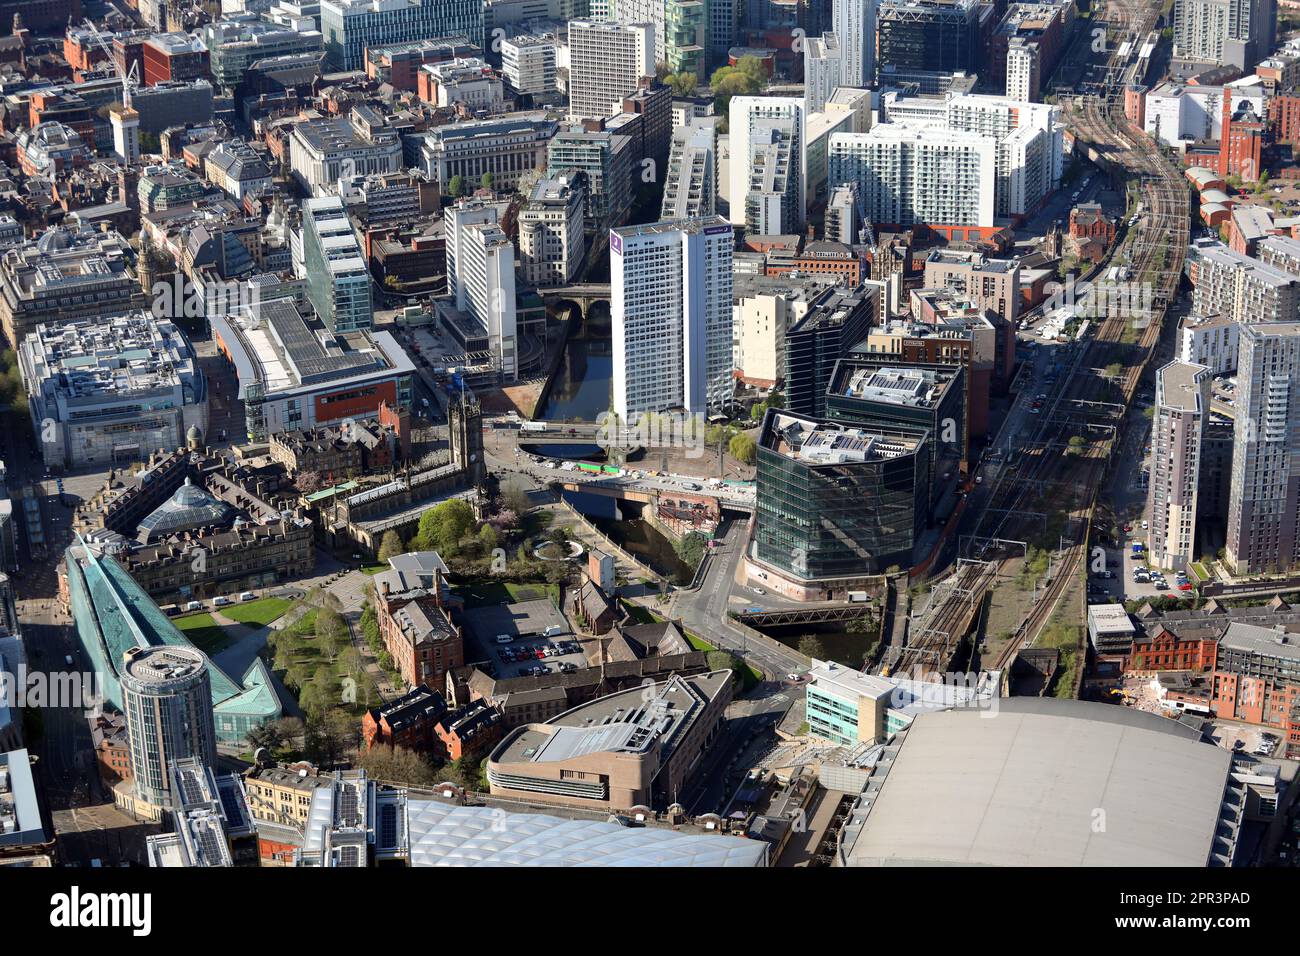 Vue aérienne du centre-ville de Manchester autour de la rivière Irwell, du musée national du football, de Shambles Square et de la cathédrale de Manchester Banque D'Images